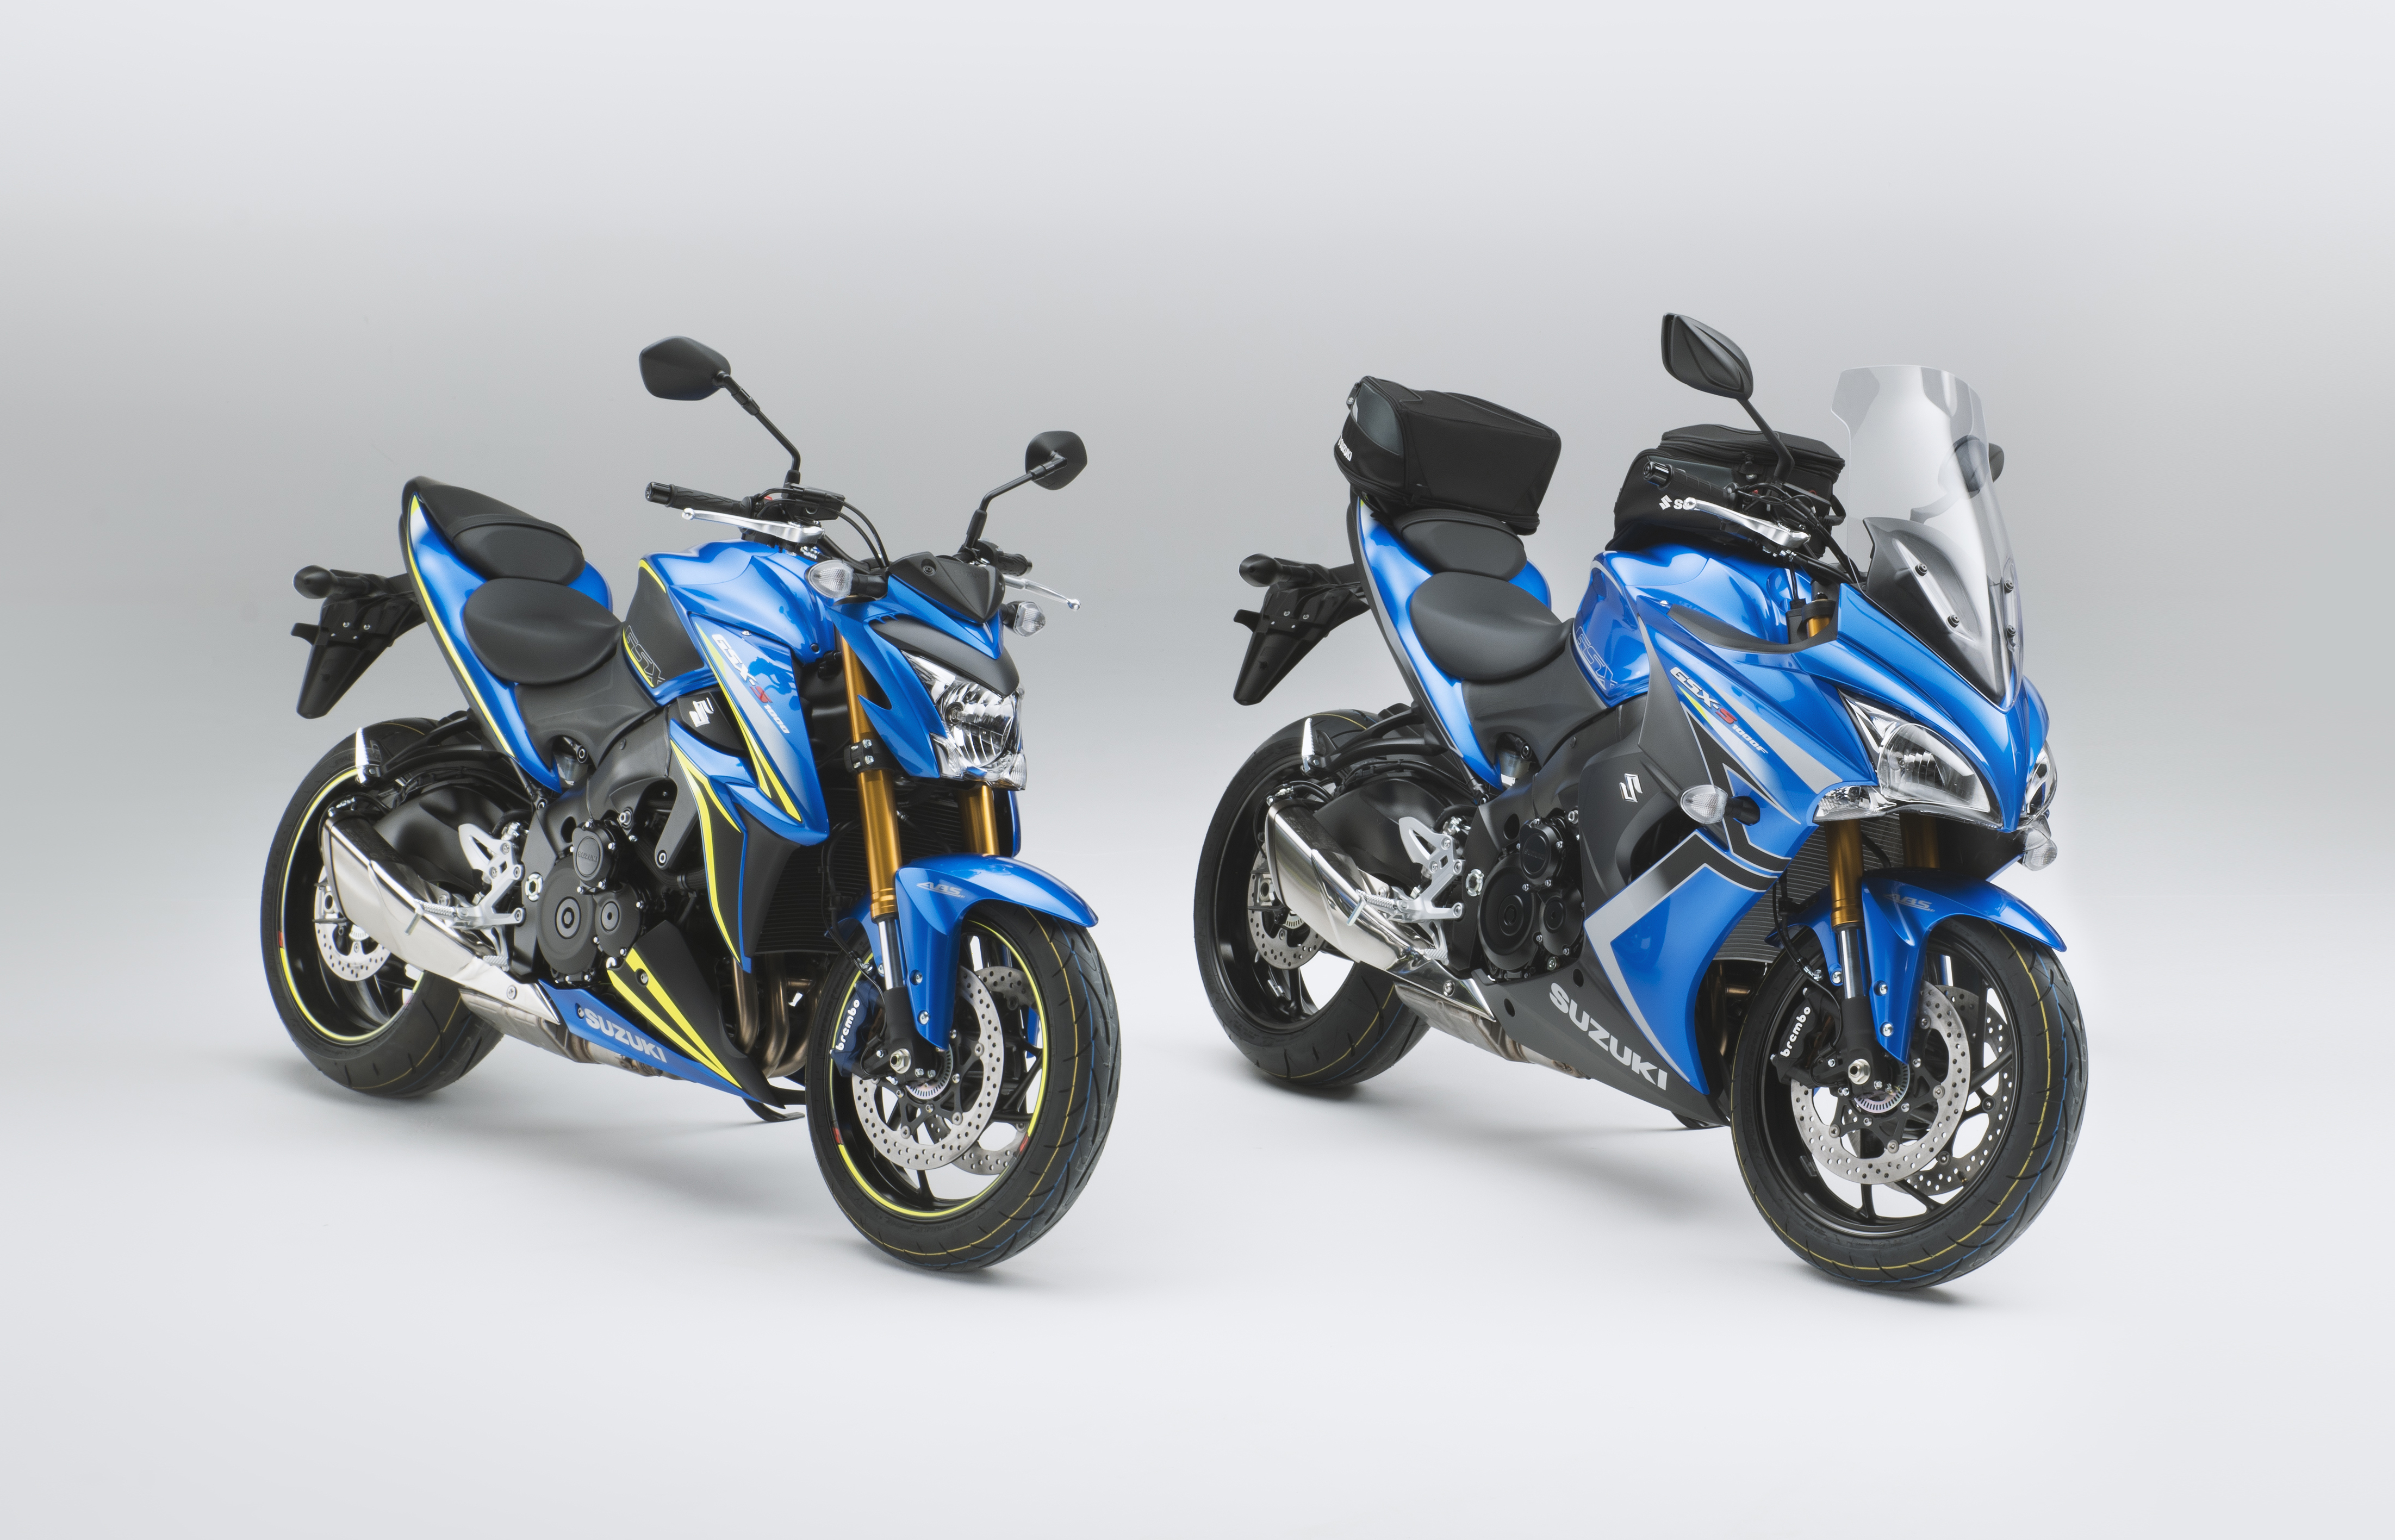 Suzuki Announces New Special Edition Gsx S1000 And Gsx S1000f Models Suzuki Press